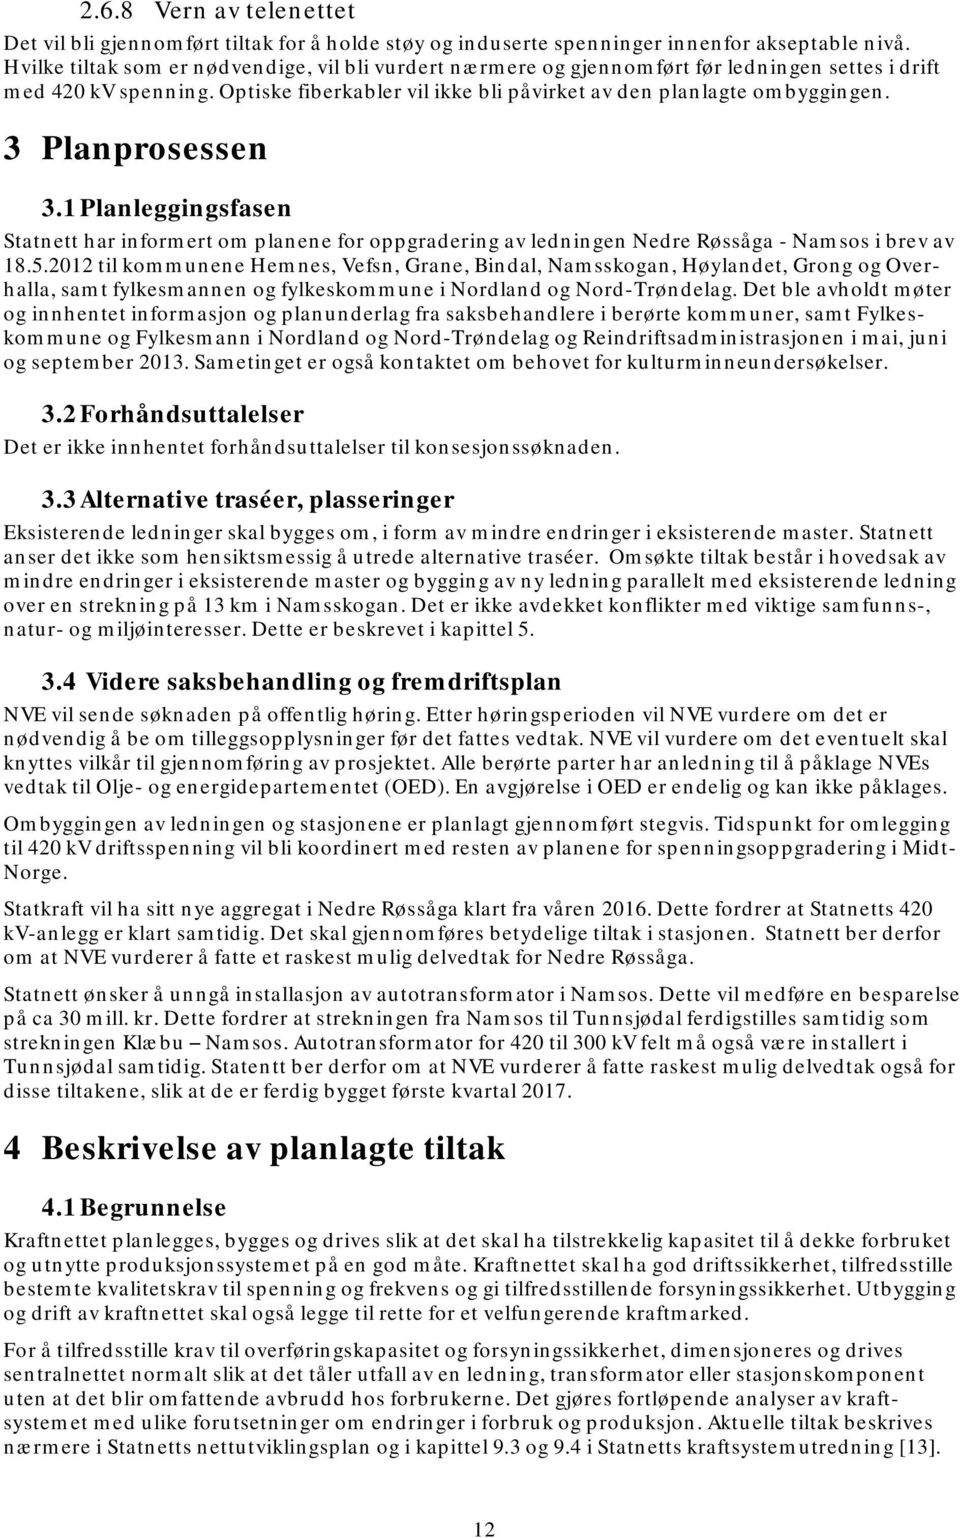 3 Planprosessen 3.1 Planleggingsfasen Statnett har informert om planene for oppgradering av ledningen Nedre Røssåga - Namsos i brev av 18.5.